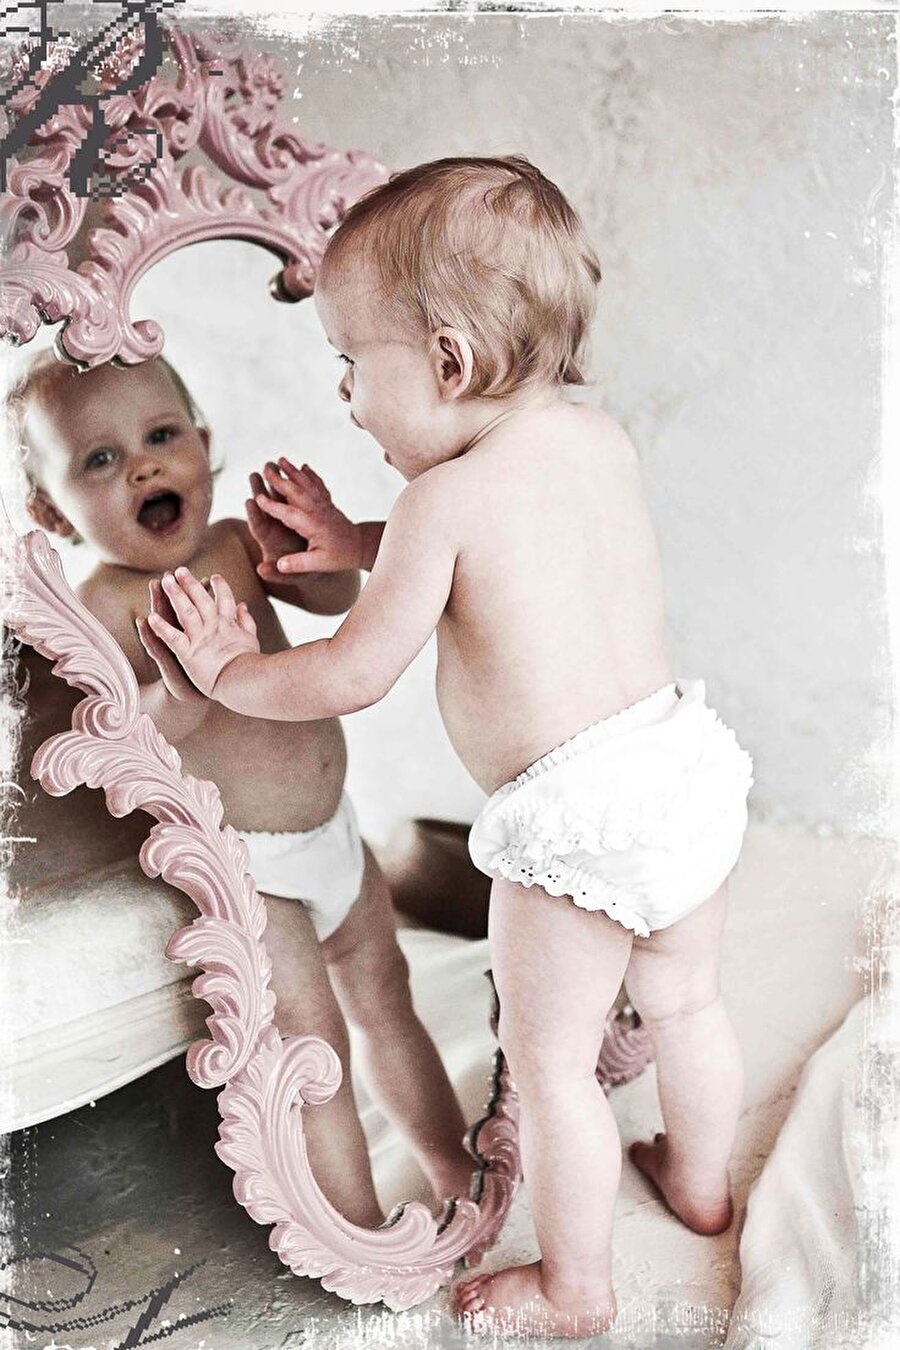 Gözünüzden ayırmayın
Bebeklerin kendilerini tanımaları için aynalar çok önemlidir. Uzmanlar, bebeklerin ilk oyuncakları arasında kırılmaz aynaların bulunması gerektiğini tavsiye ediyor. Bebekler ilk adımlarını atmaya başlar başlamaz aynaların yolunu çabuk öğrenebilirler. “Ayna duvara sabitlendi bir şey olmaz” düşüncesine kapılıp bebeğinizin ayna ile oynamasına müsaade ediyorsanız, elinde bir şey olup olmadığını kontrol edin. Bebekler bir şeylere vurmayı çok sever. Elindeki sert cisimle aynaya vuran bir bebek, yaptığı hareketin ne gibi bir sonuç doğuracağını haliyle bilmez. 